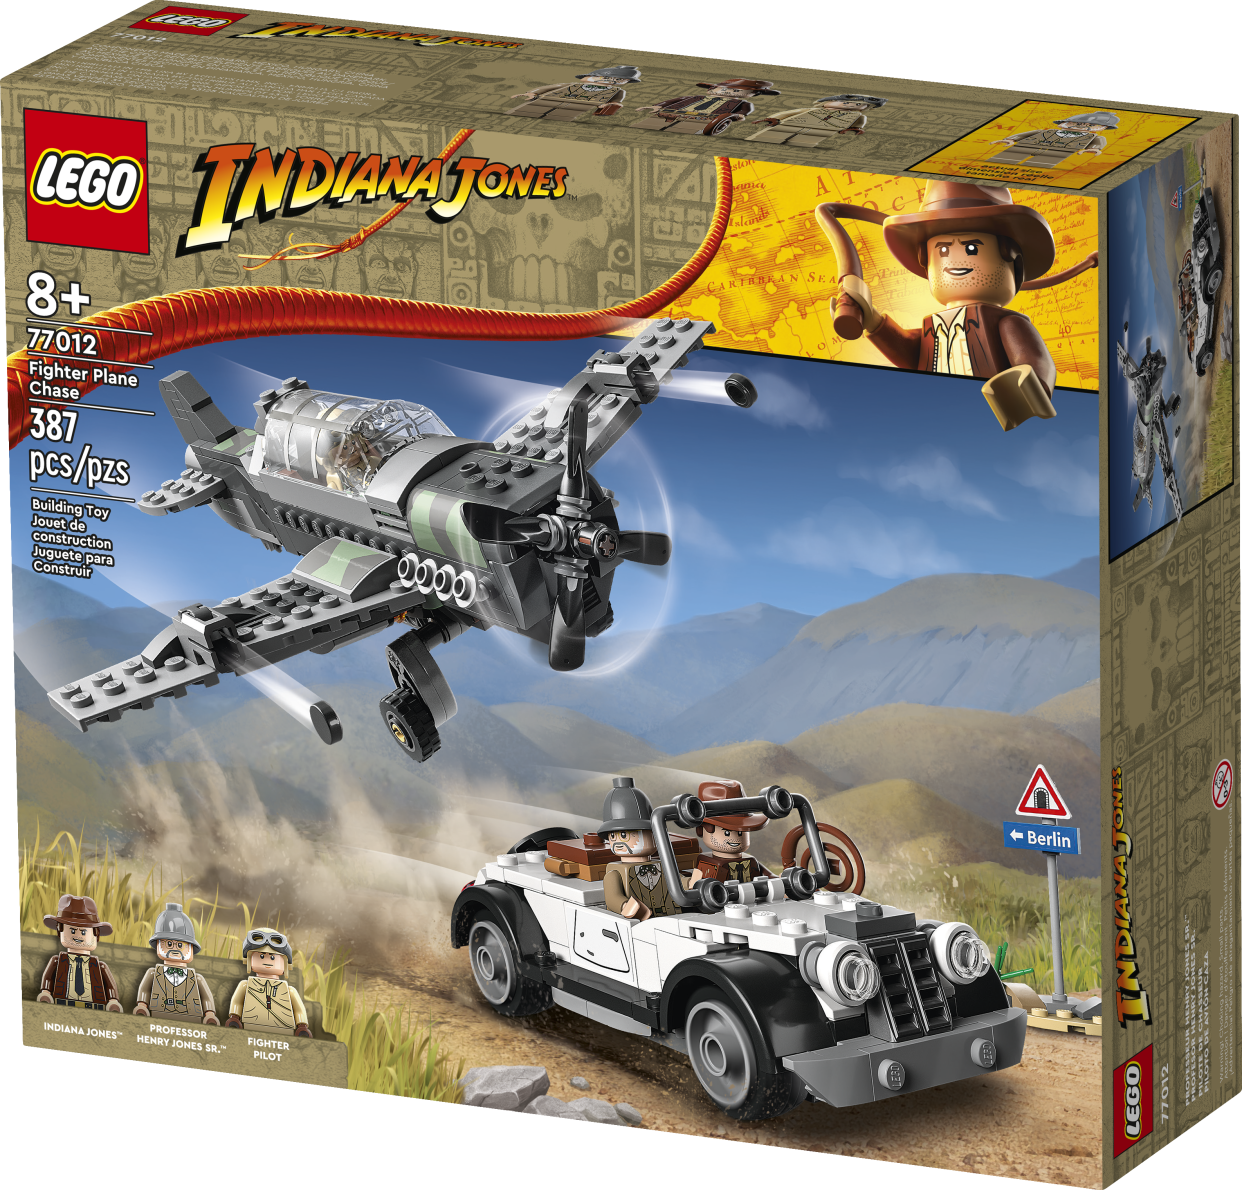 Lego Indiana Jones Fighter Plane Chase (Photo: Courtesy of Lego)